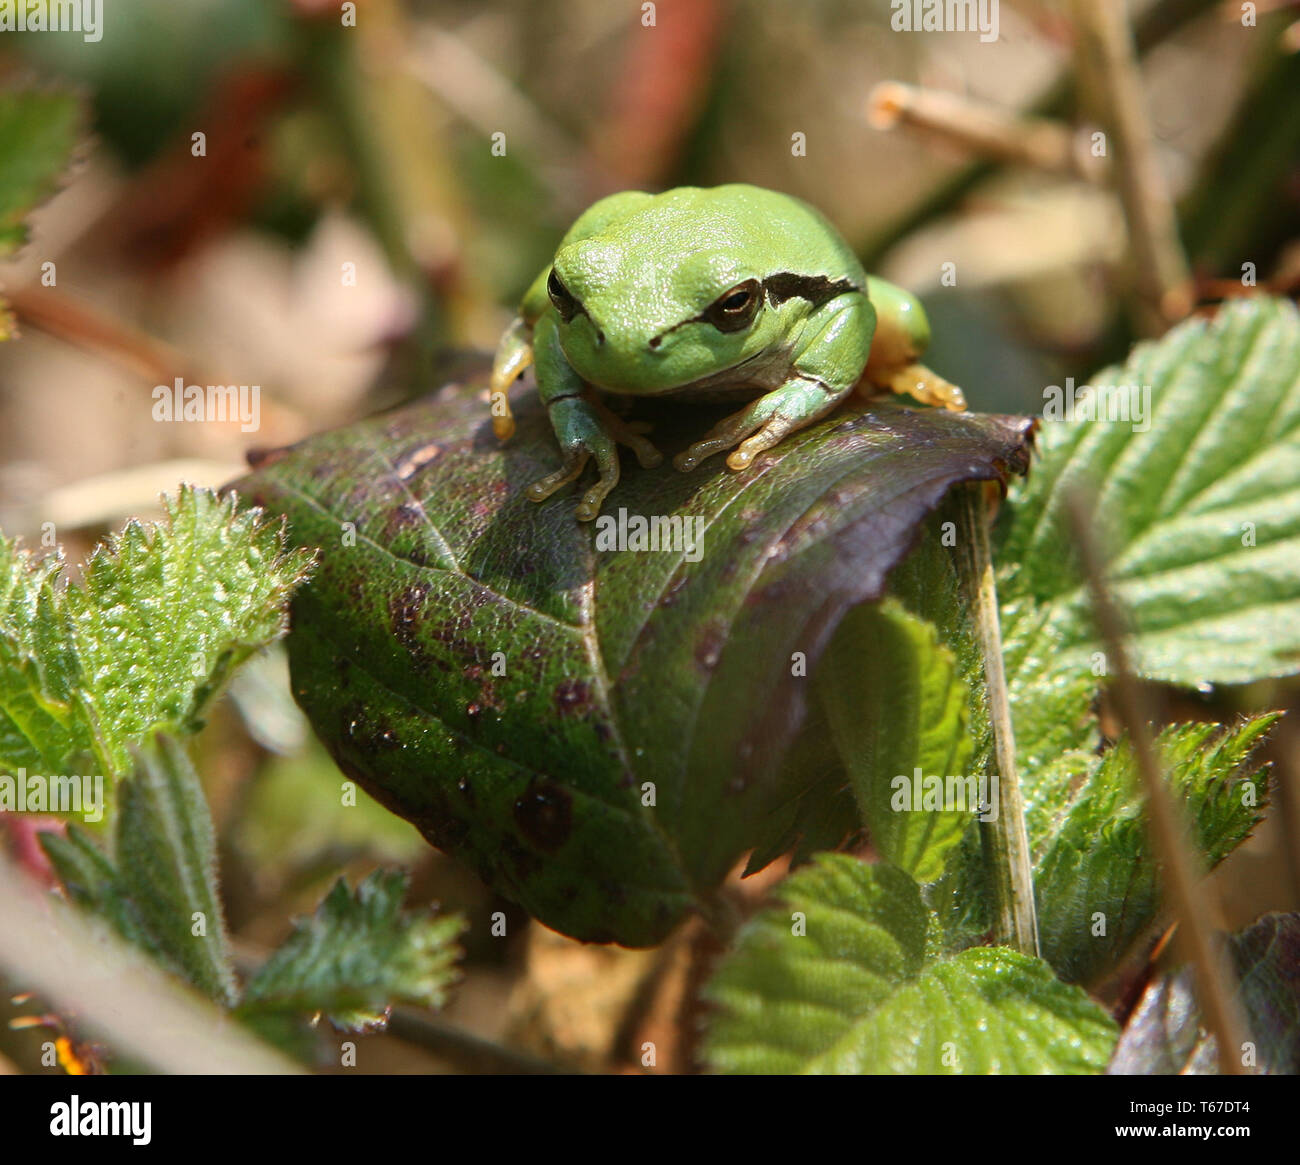 European tree frog, Hyla arborea Stock Photo